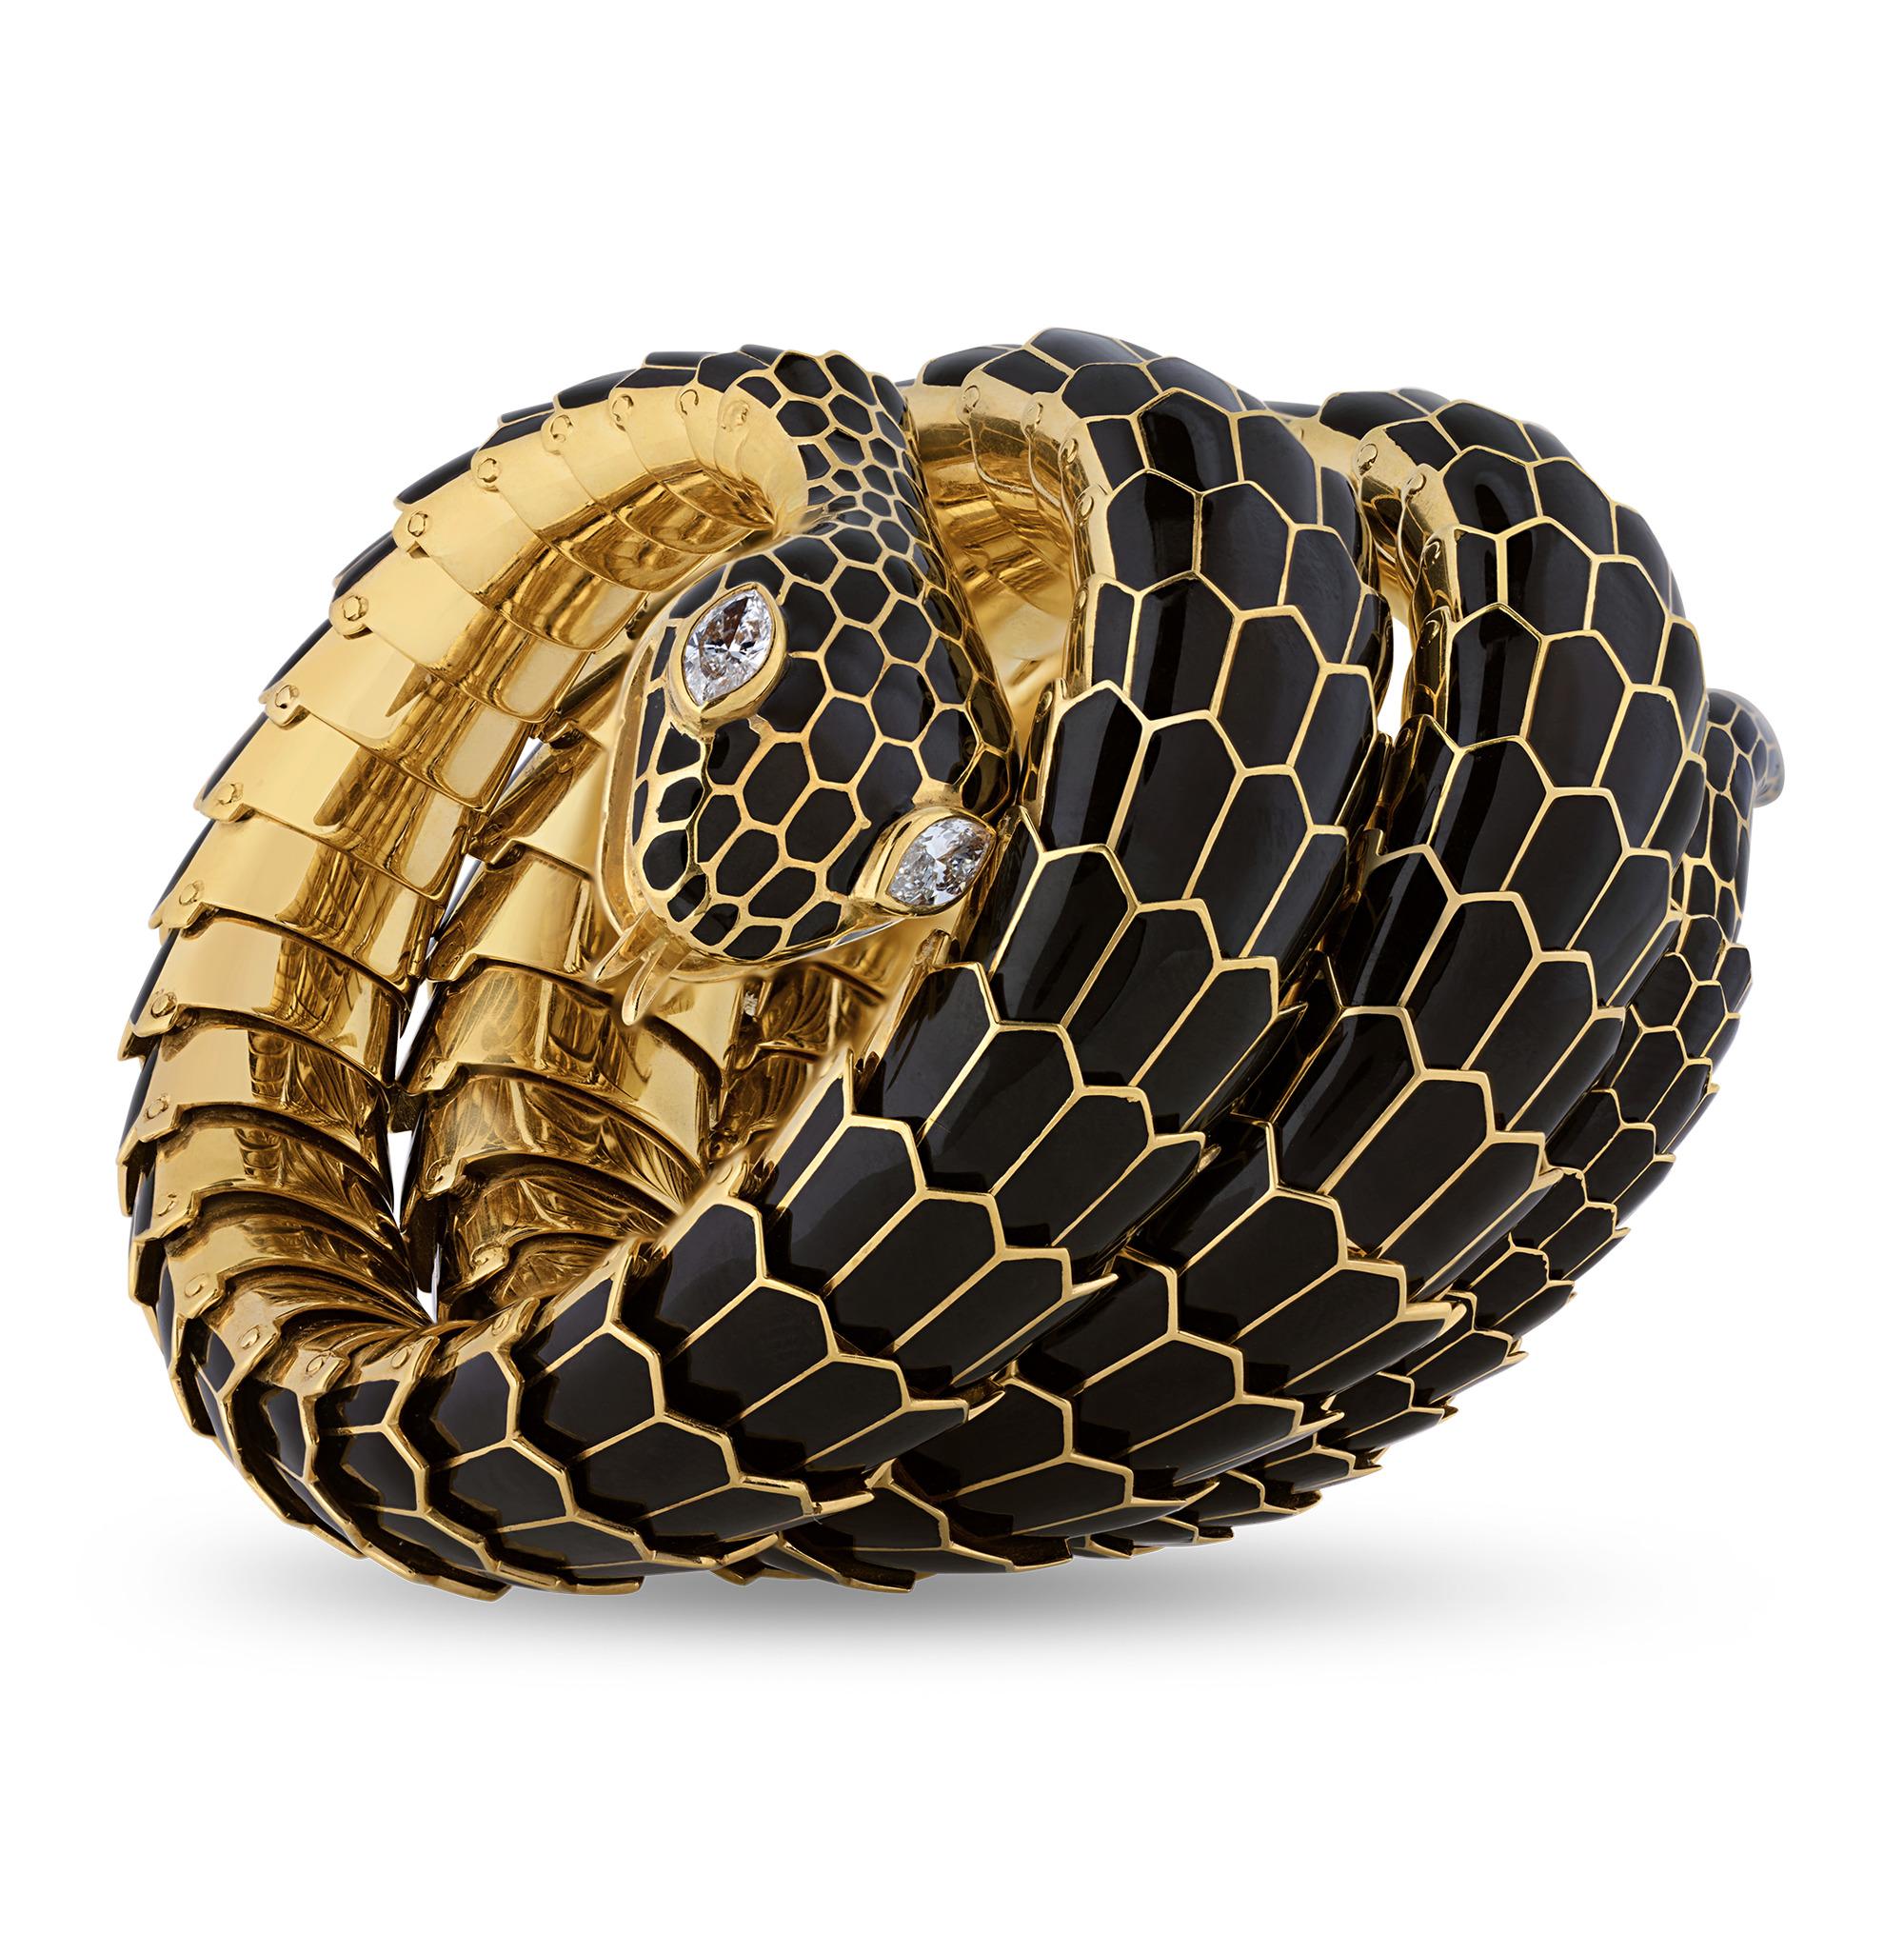 Ce bracelet vintage accrocheur prend la forme d'un serpent qui se faufile. Le bracelet en or et émail noir fabriqué à la main simule parfaitement la peau écailleuse du reptile captivant, et les yeux du serpent sont formés de diamants blancs taille